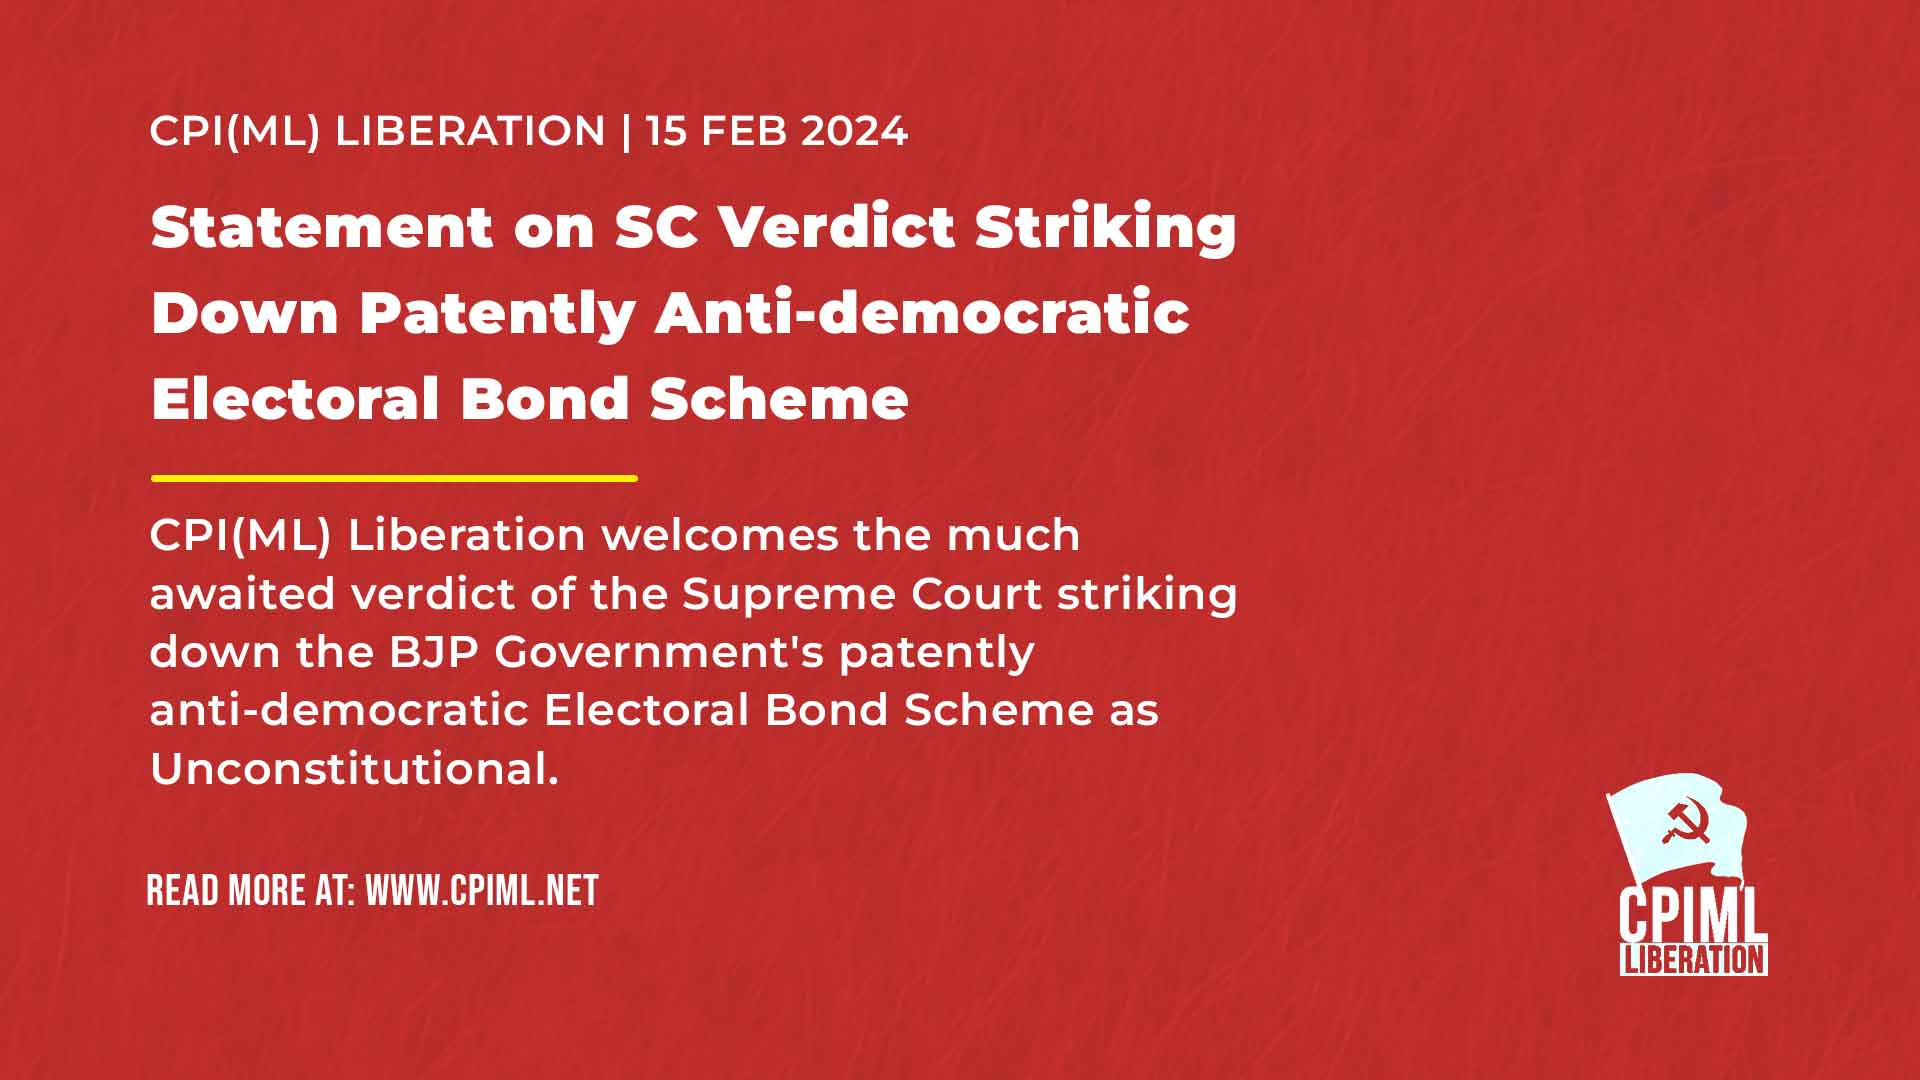 Statement on SC Verdict Striking Down Patently Anti-democratic Electoral Bond Scheme